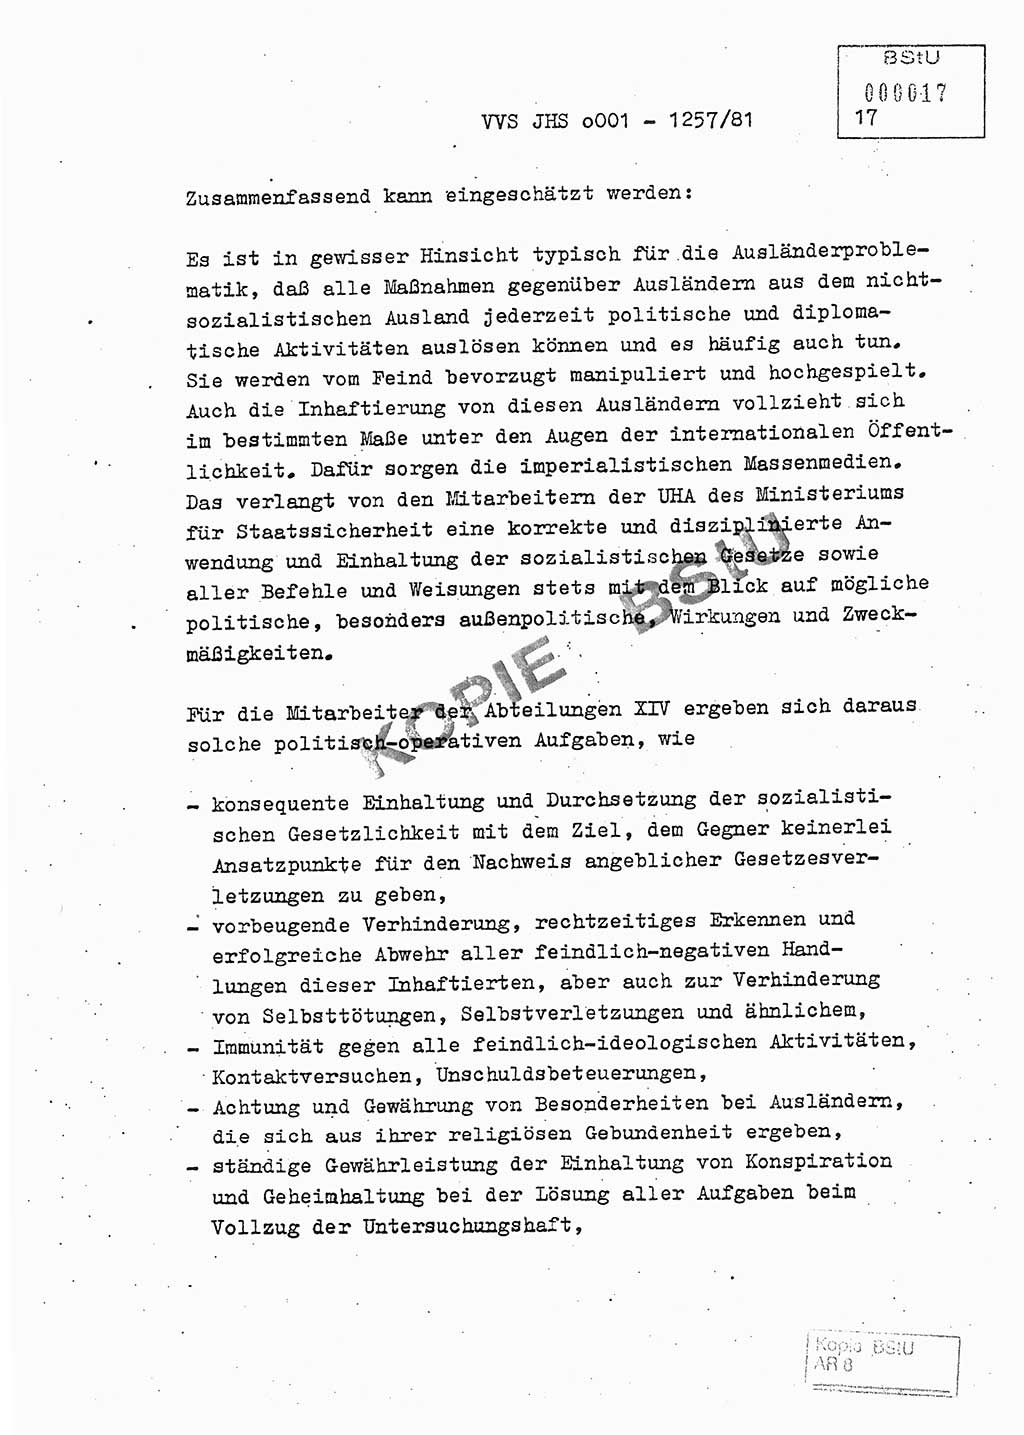 Fachschulabschlußarbeit Unterleutnant Dieter Möller (BV Rst. Abt. ⅩⅣ), Ministerium für Staatssicherheit (MfS) [Deutsche Demokratische Republik (DDR)], Juristische Hochschule (JHS), Vertrauliche Verschlußsache (VVS) o001-1257/81, Potsdam 1982, Seite 17 (FS-Abschl.-Arb. MfS DDR JHS VVS o001-1257/81 1982, S. 17)